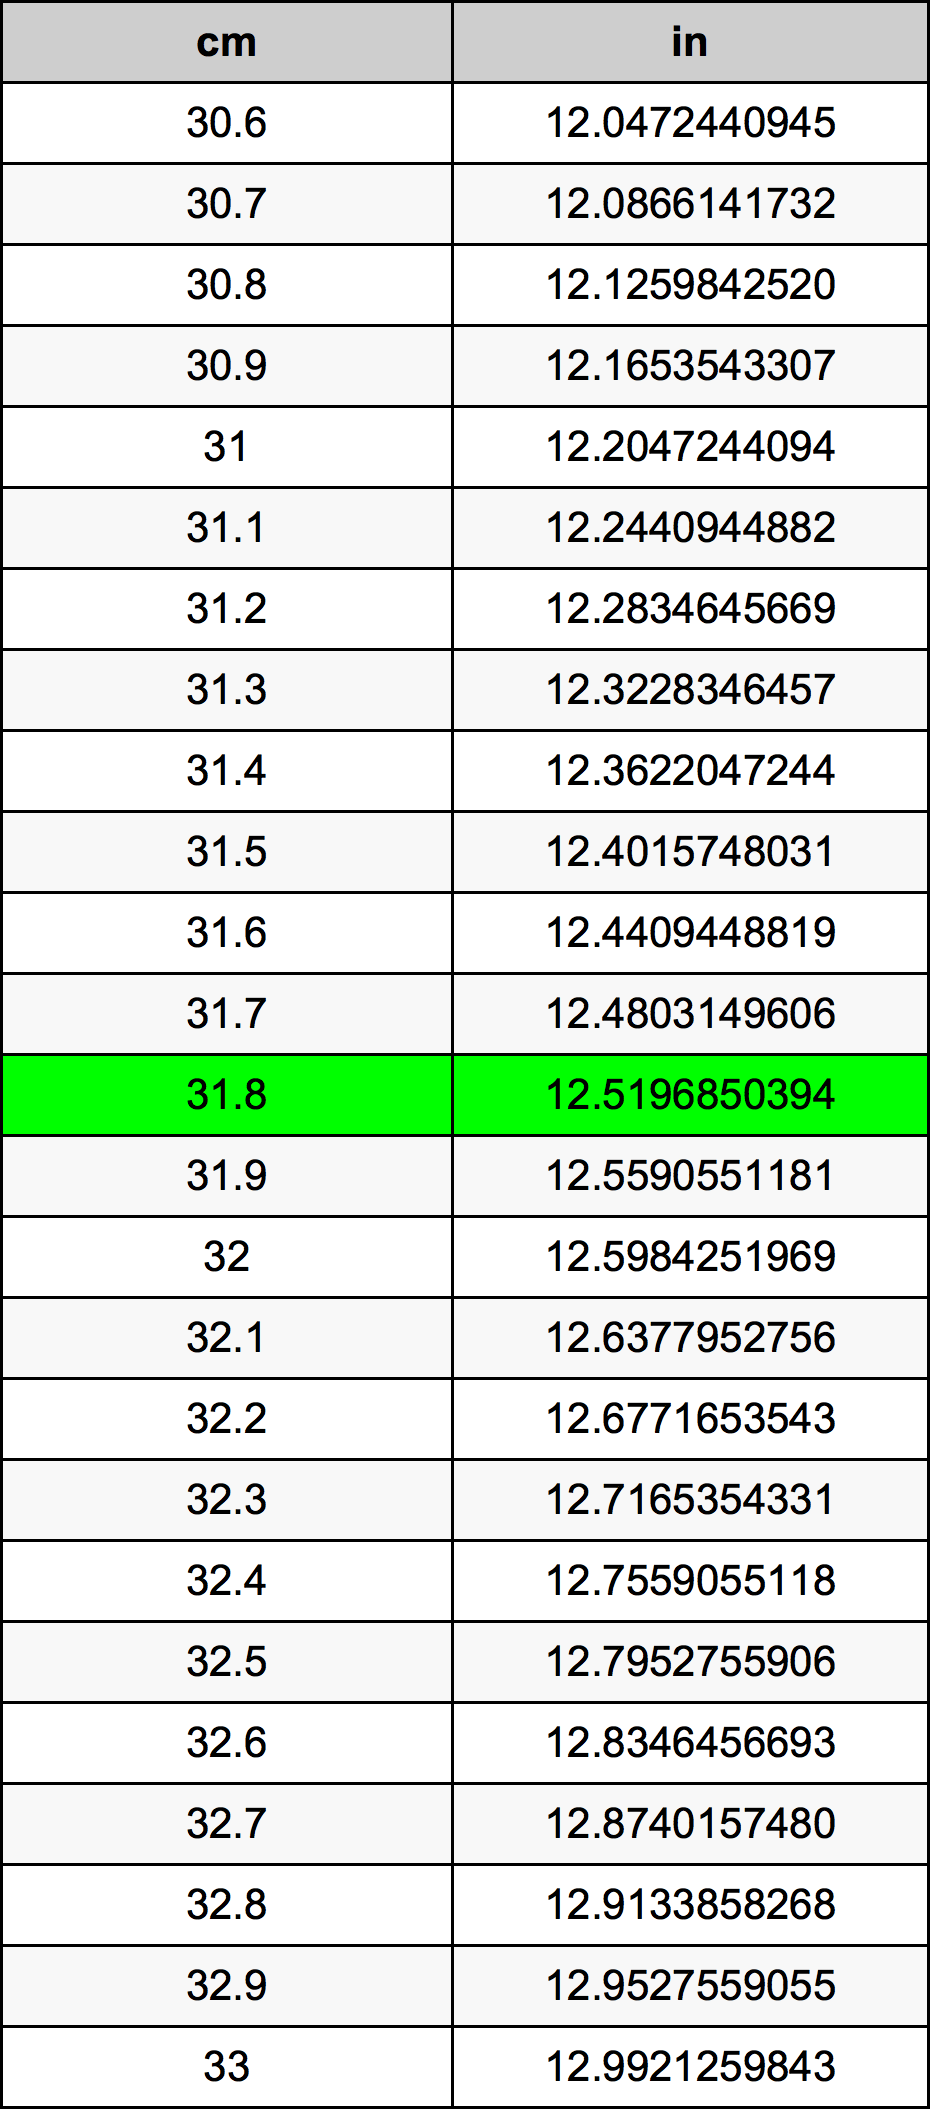 31.8 Centiméter átszámítási táblázat